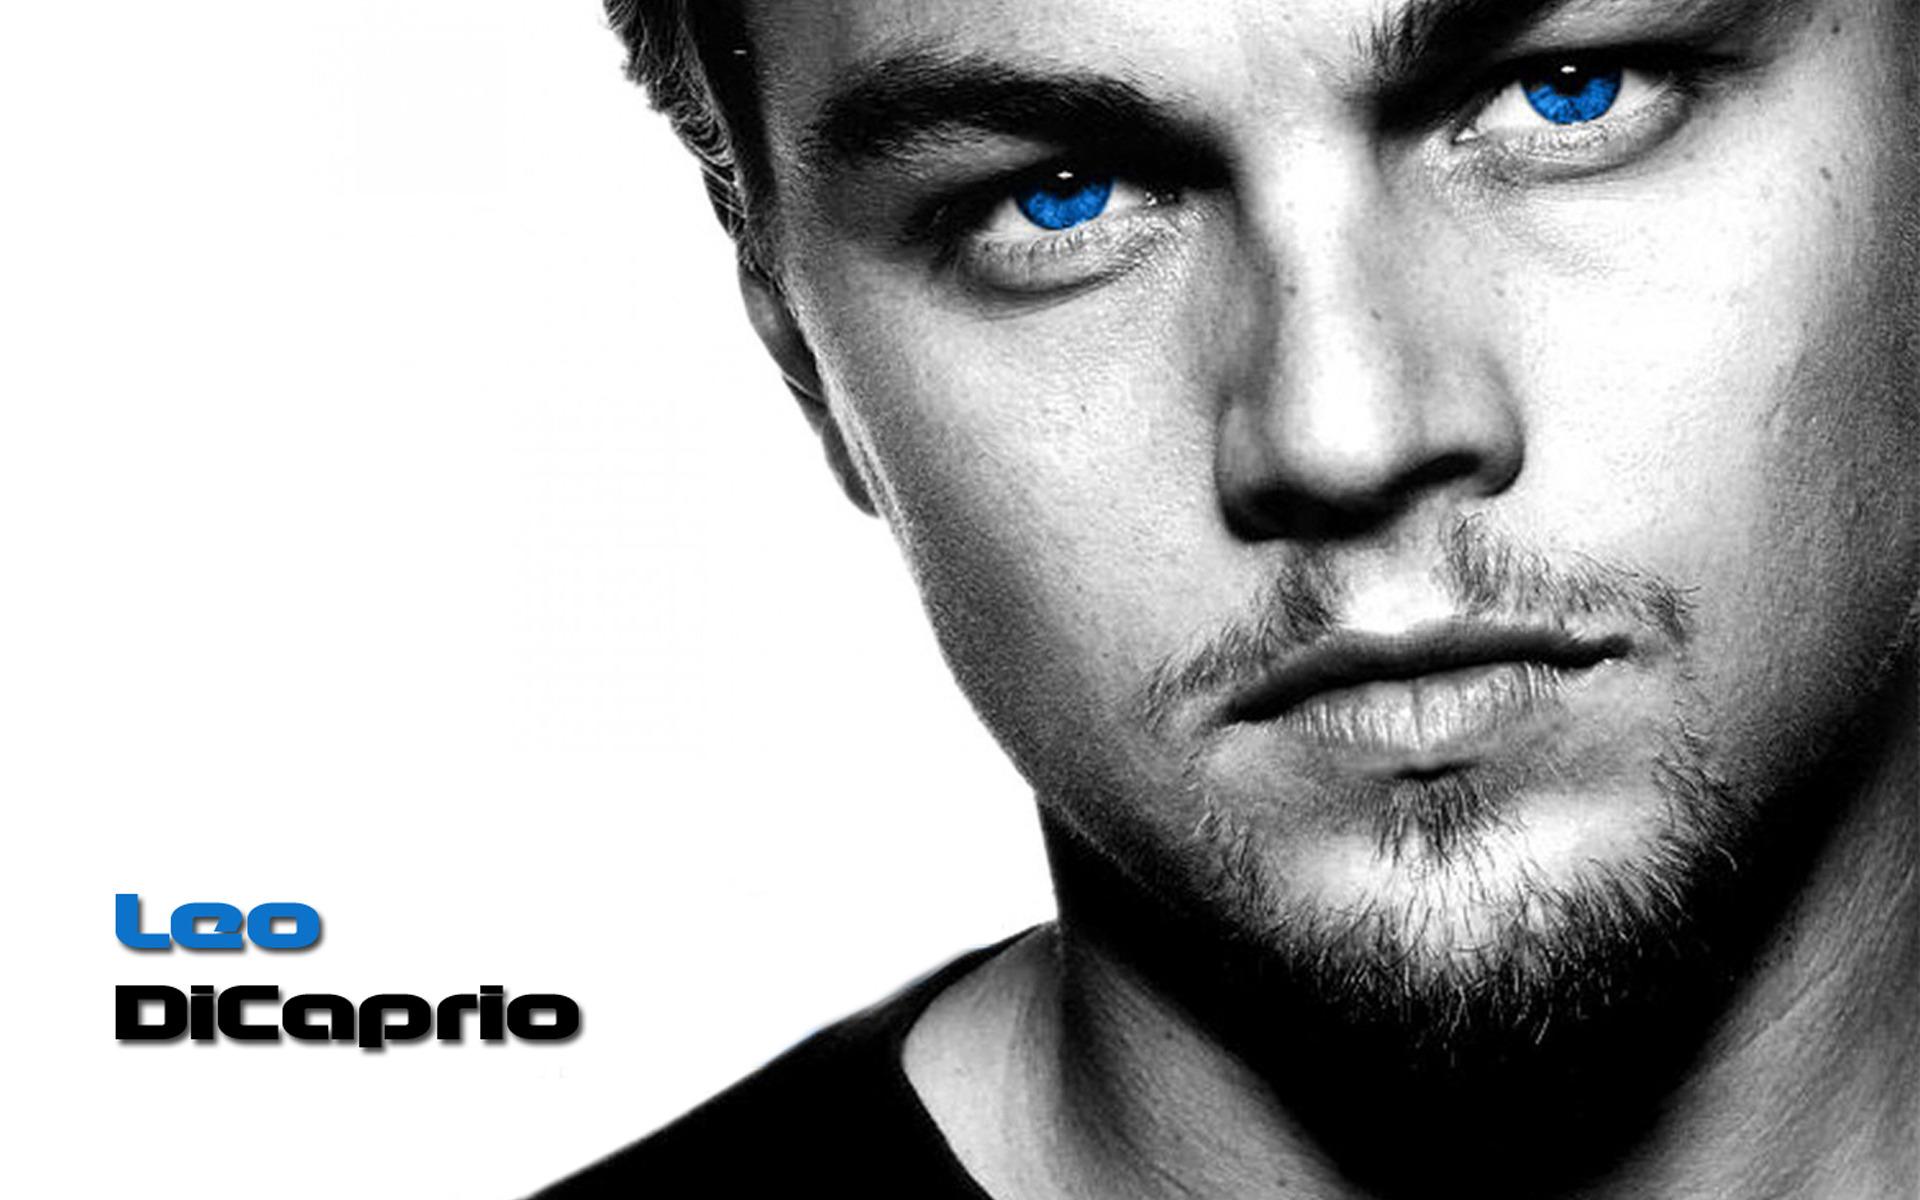 Leonardo DiCaprio Wallpaper High Resolution and Quality